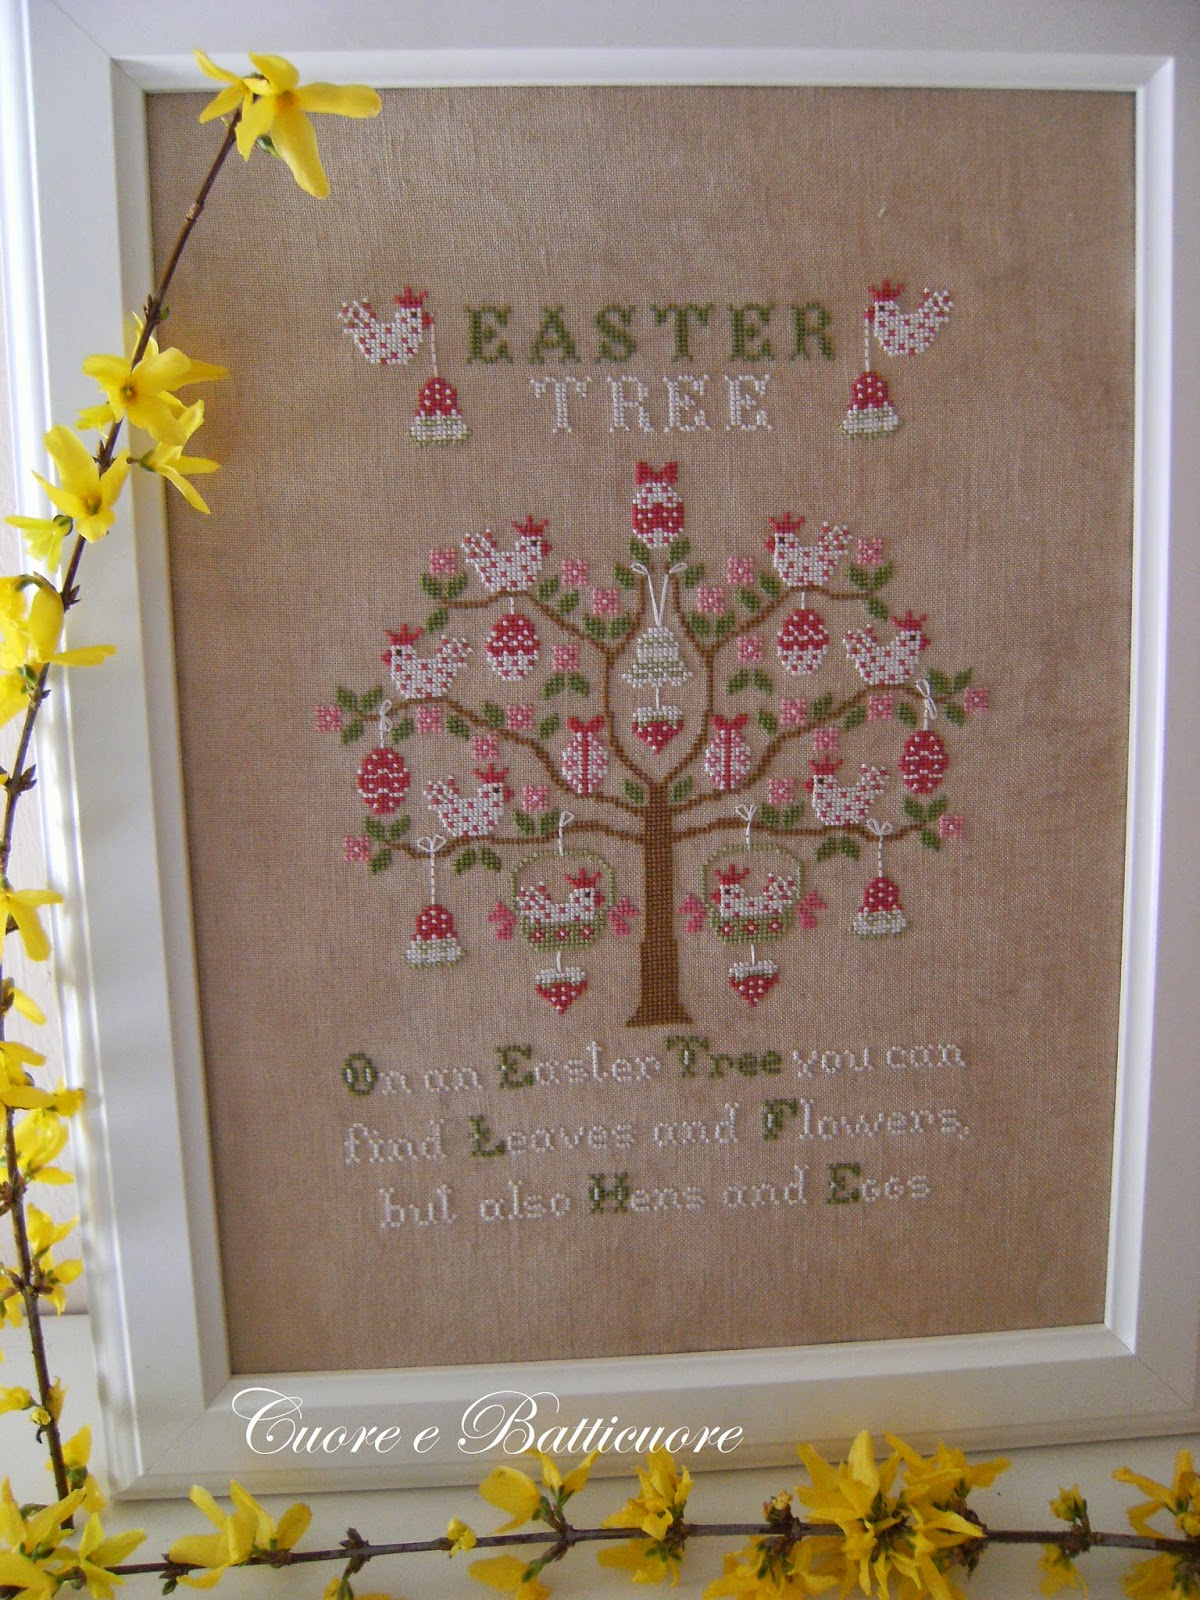 Cuore e batticuore - Easter Tree / Пасхальное дерево, схема для вышивания крестом